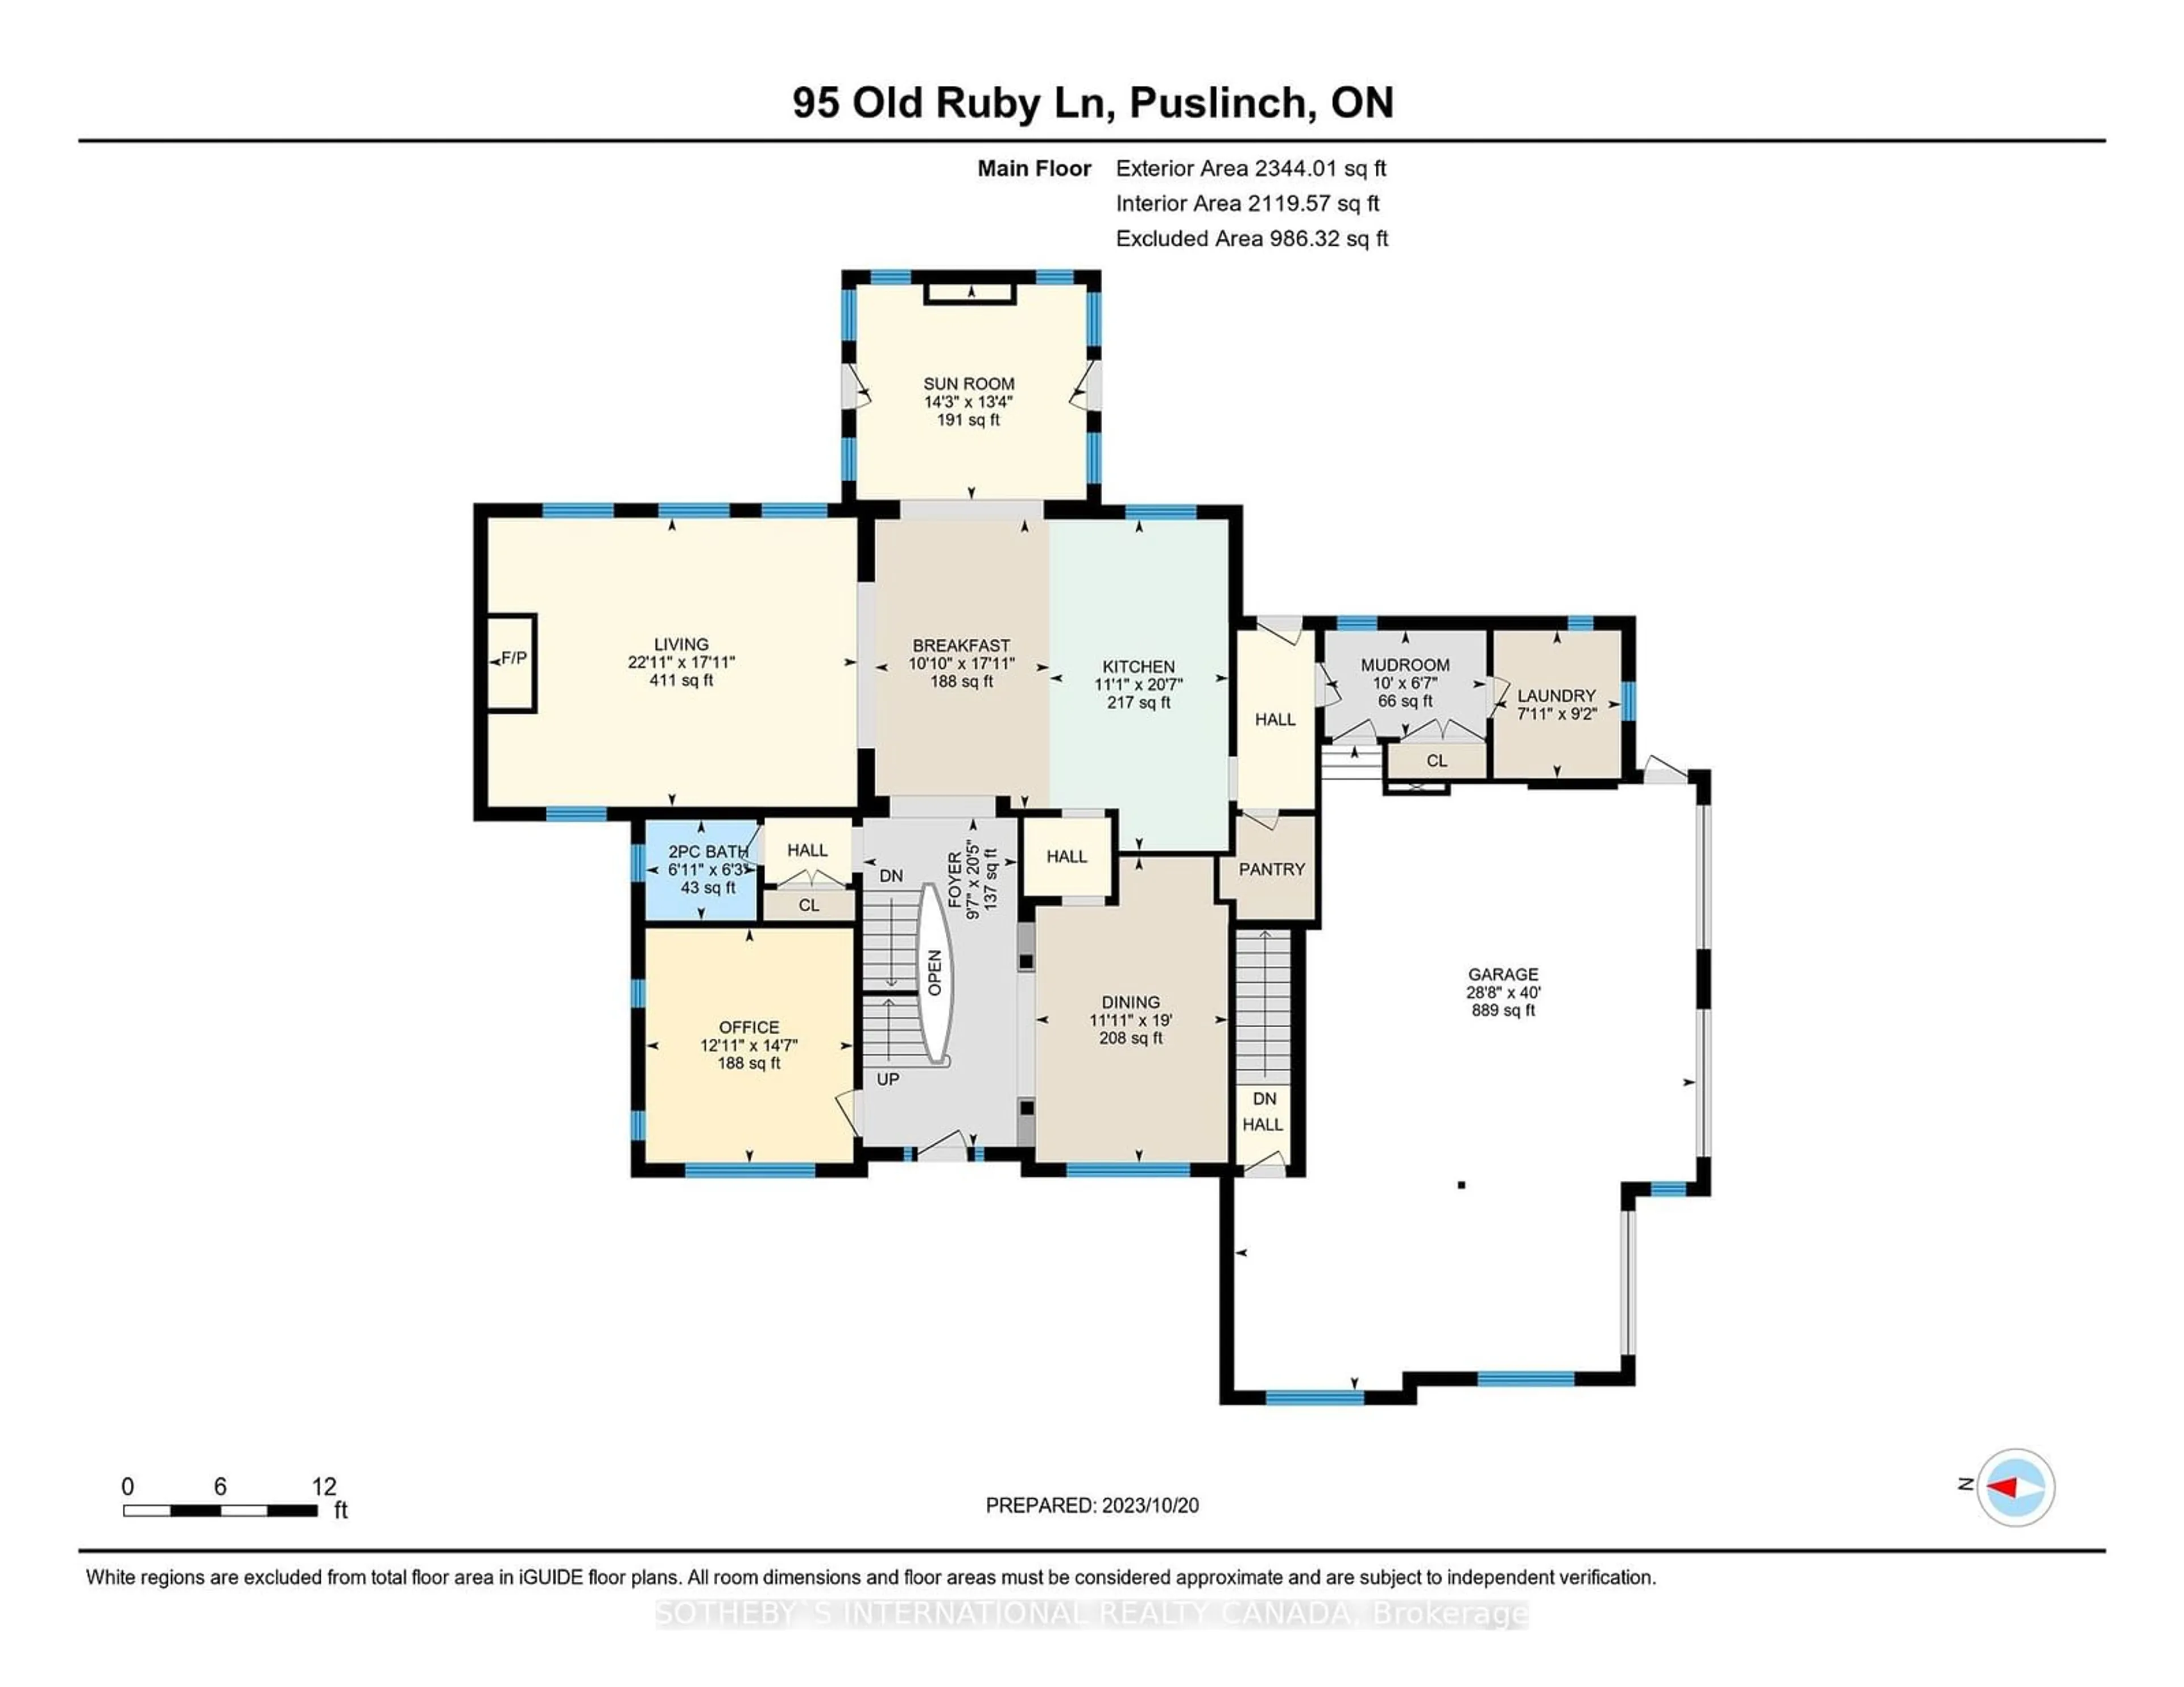 Floor plan for 95 Old Ruby Lane, Puslinch Ontario N0B 2J0